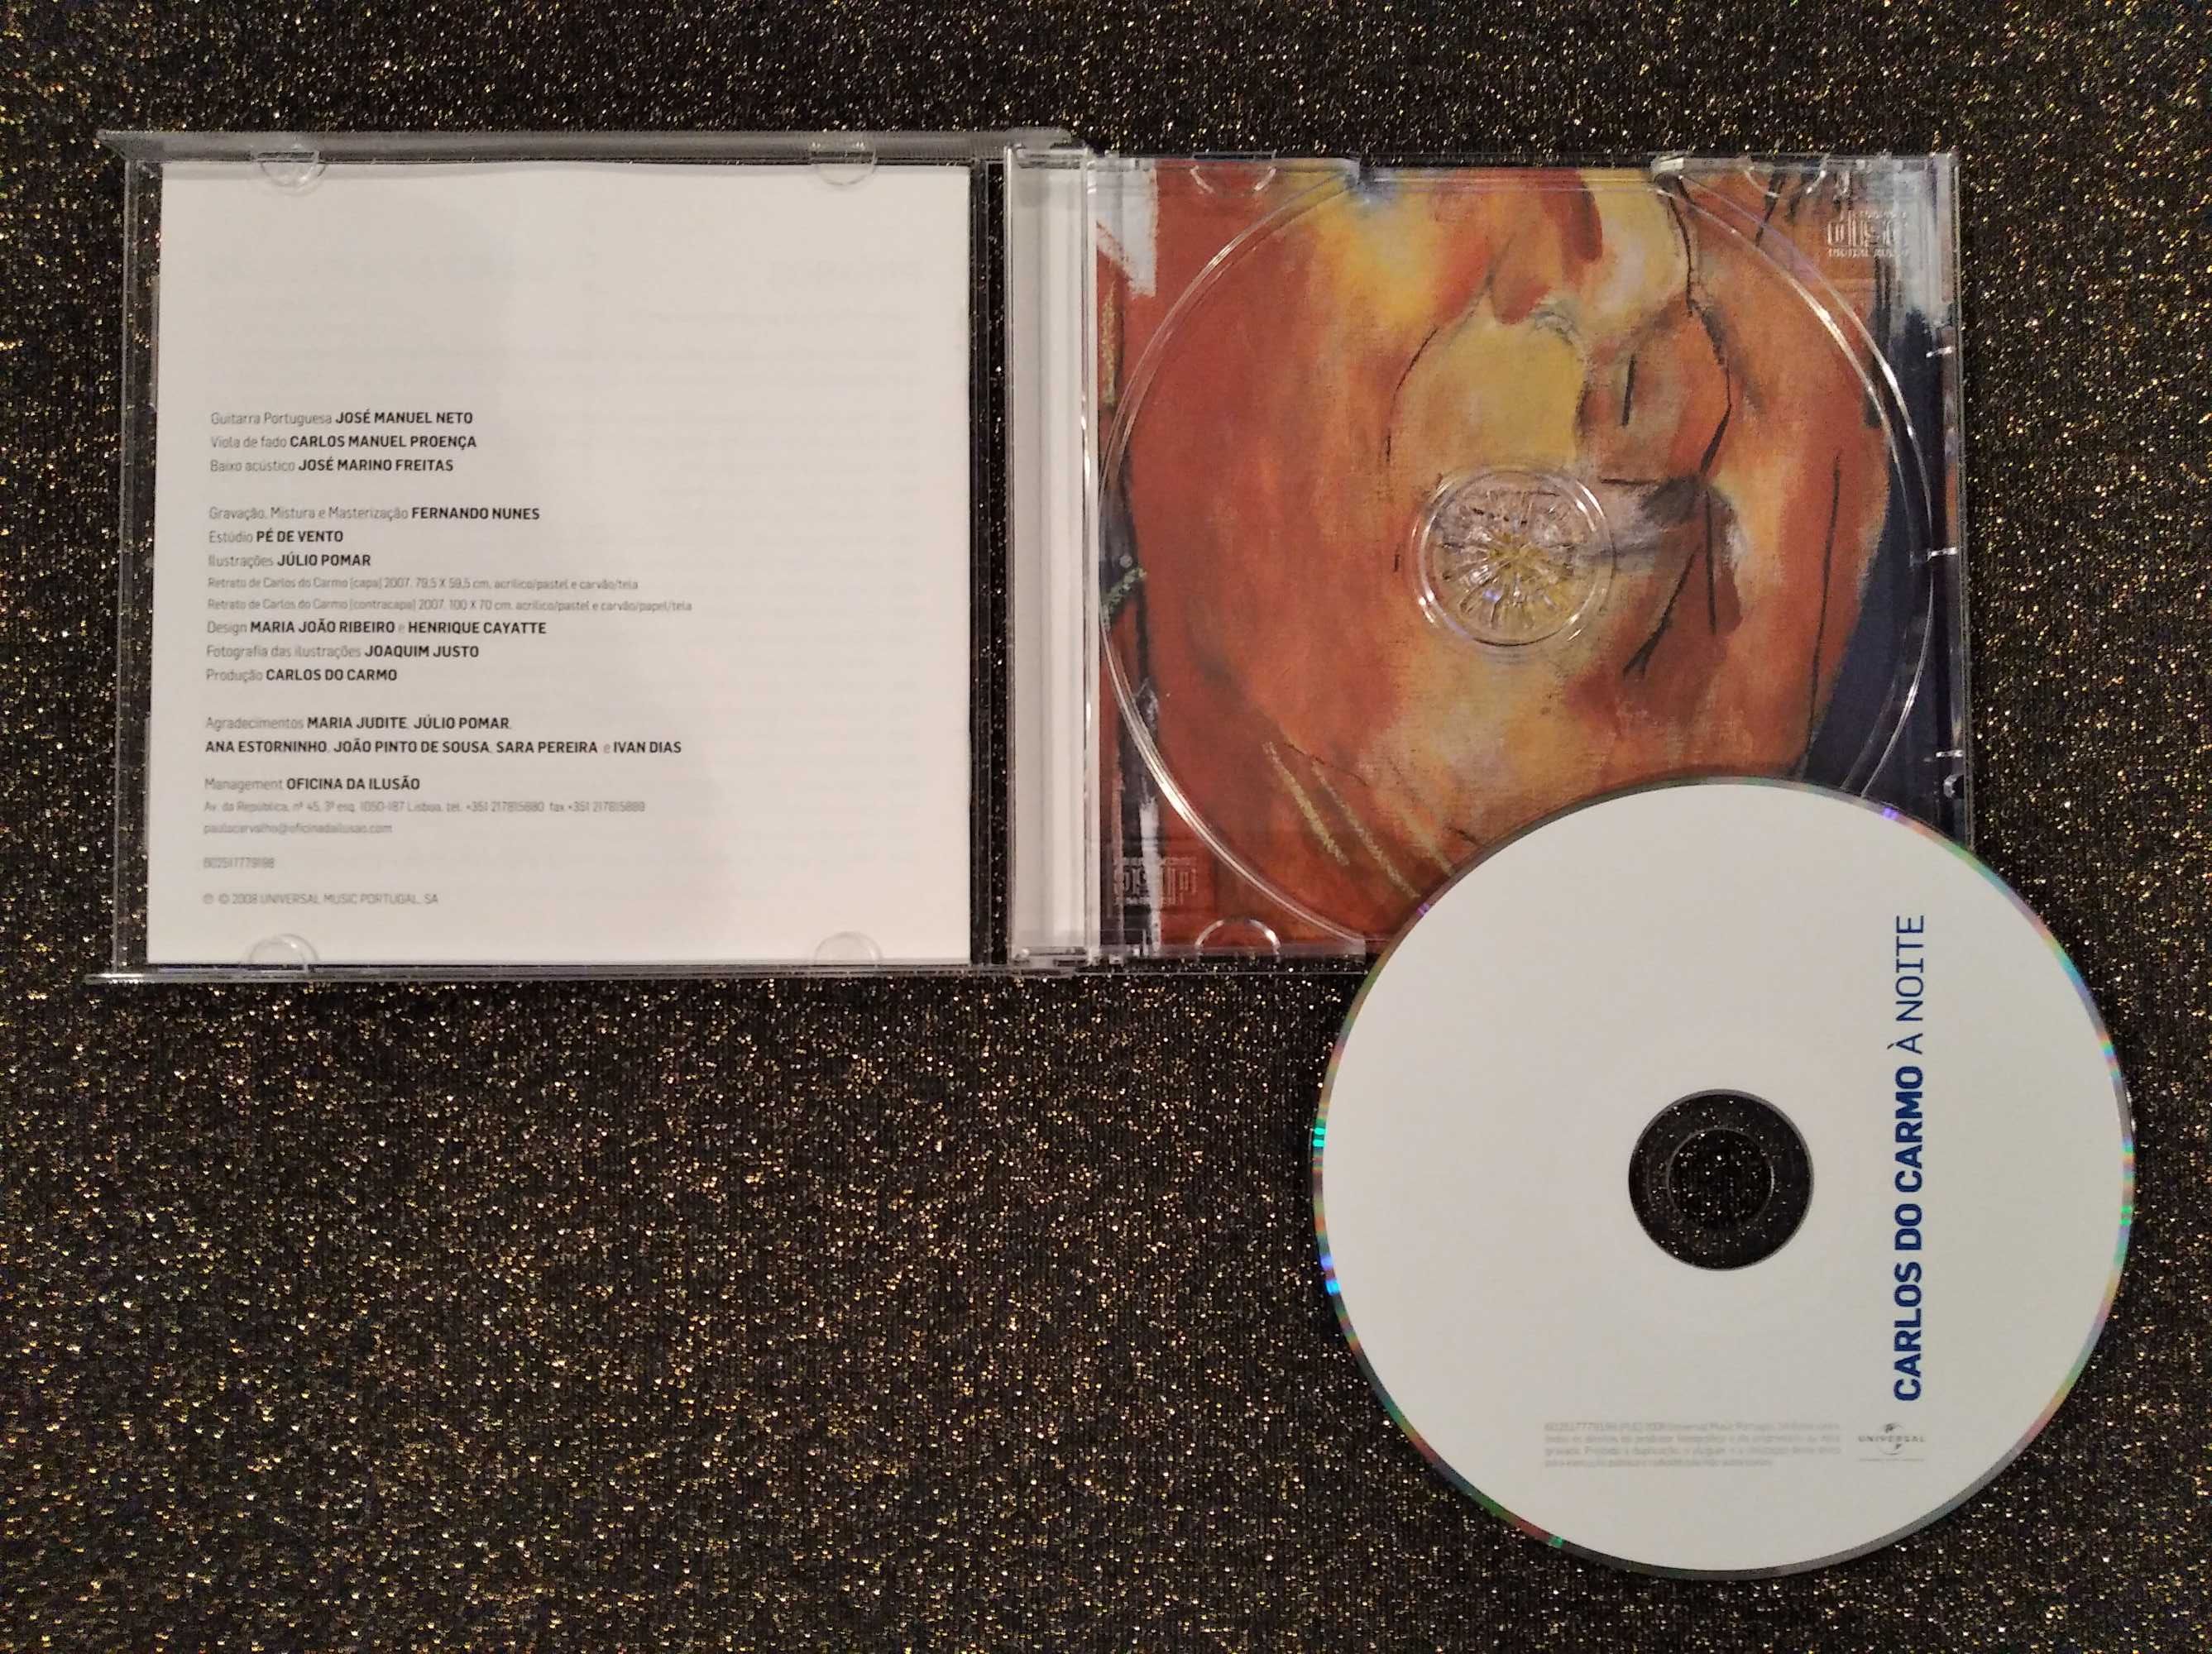 CD's: Mozart, Os Três Tenores, Carlos do Carmo